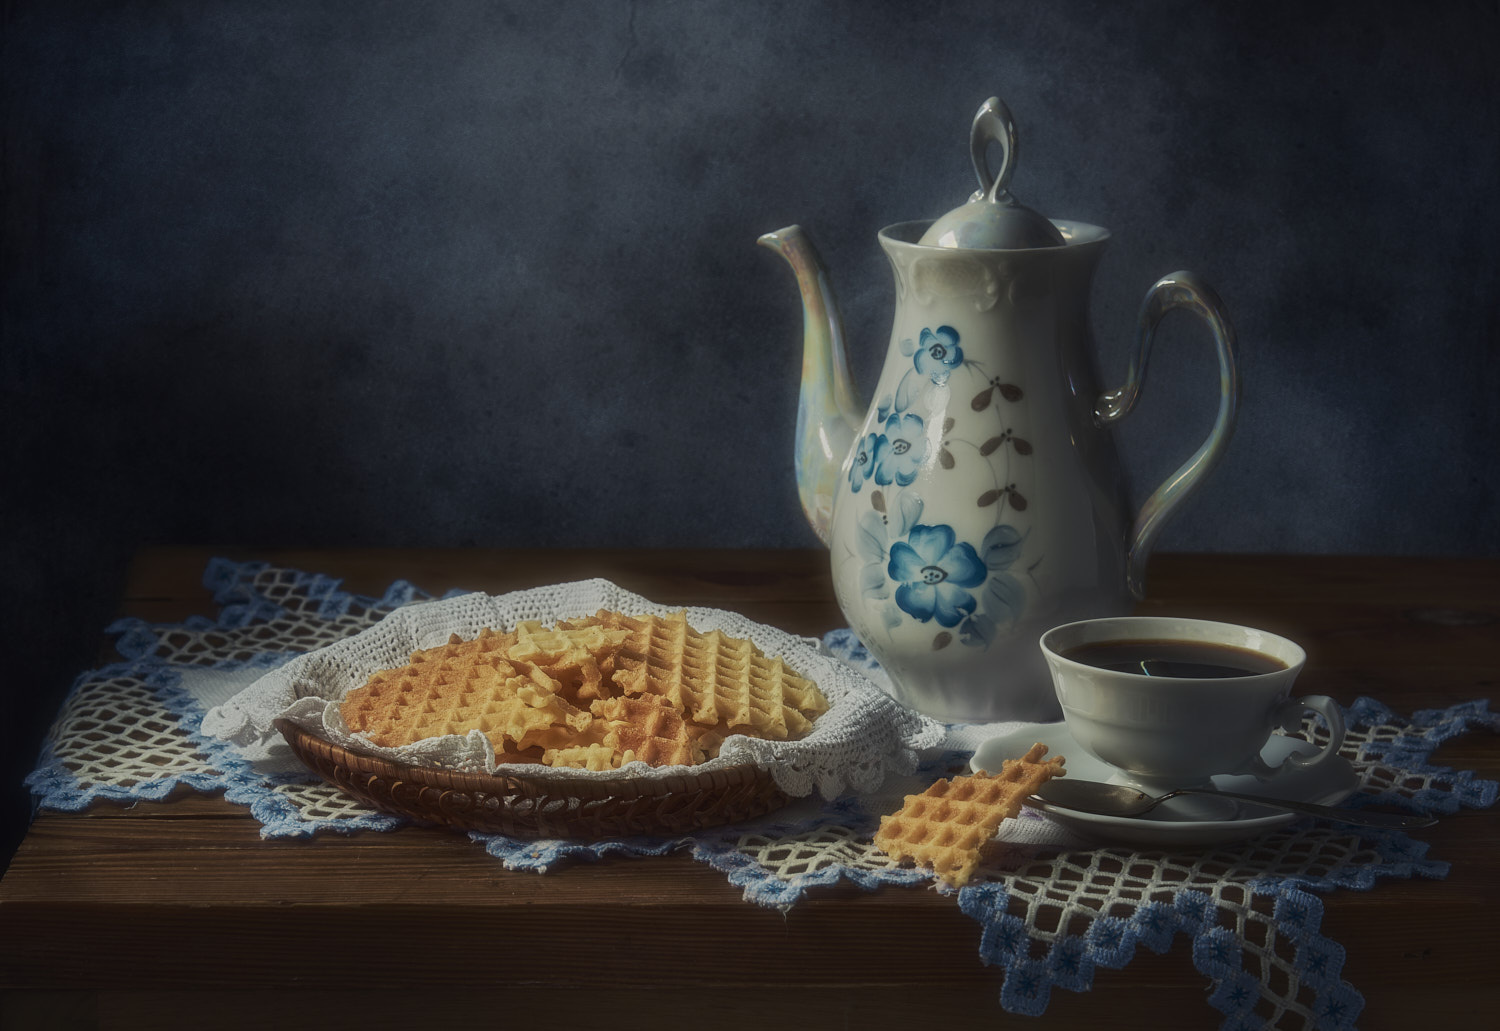 Вафли и чашечка кофе натюрморт композиция постановка сцена еда вафли кофе посуда